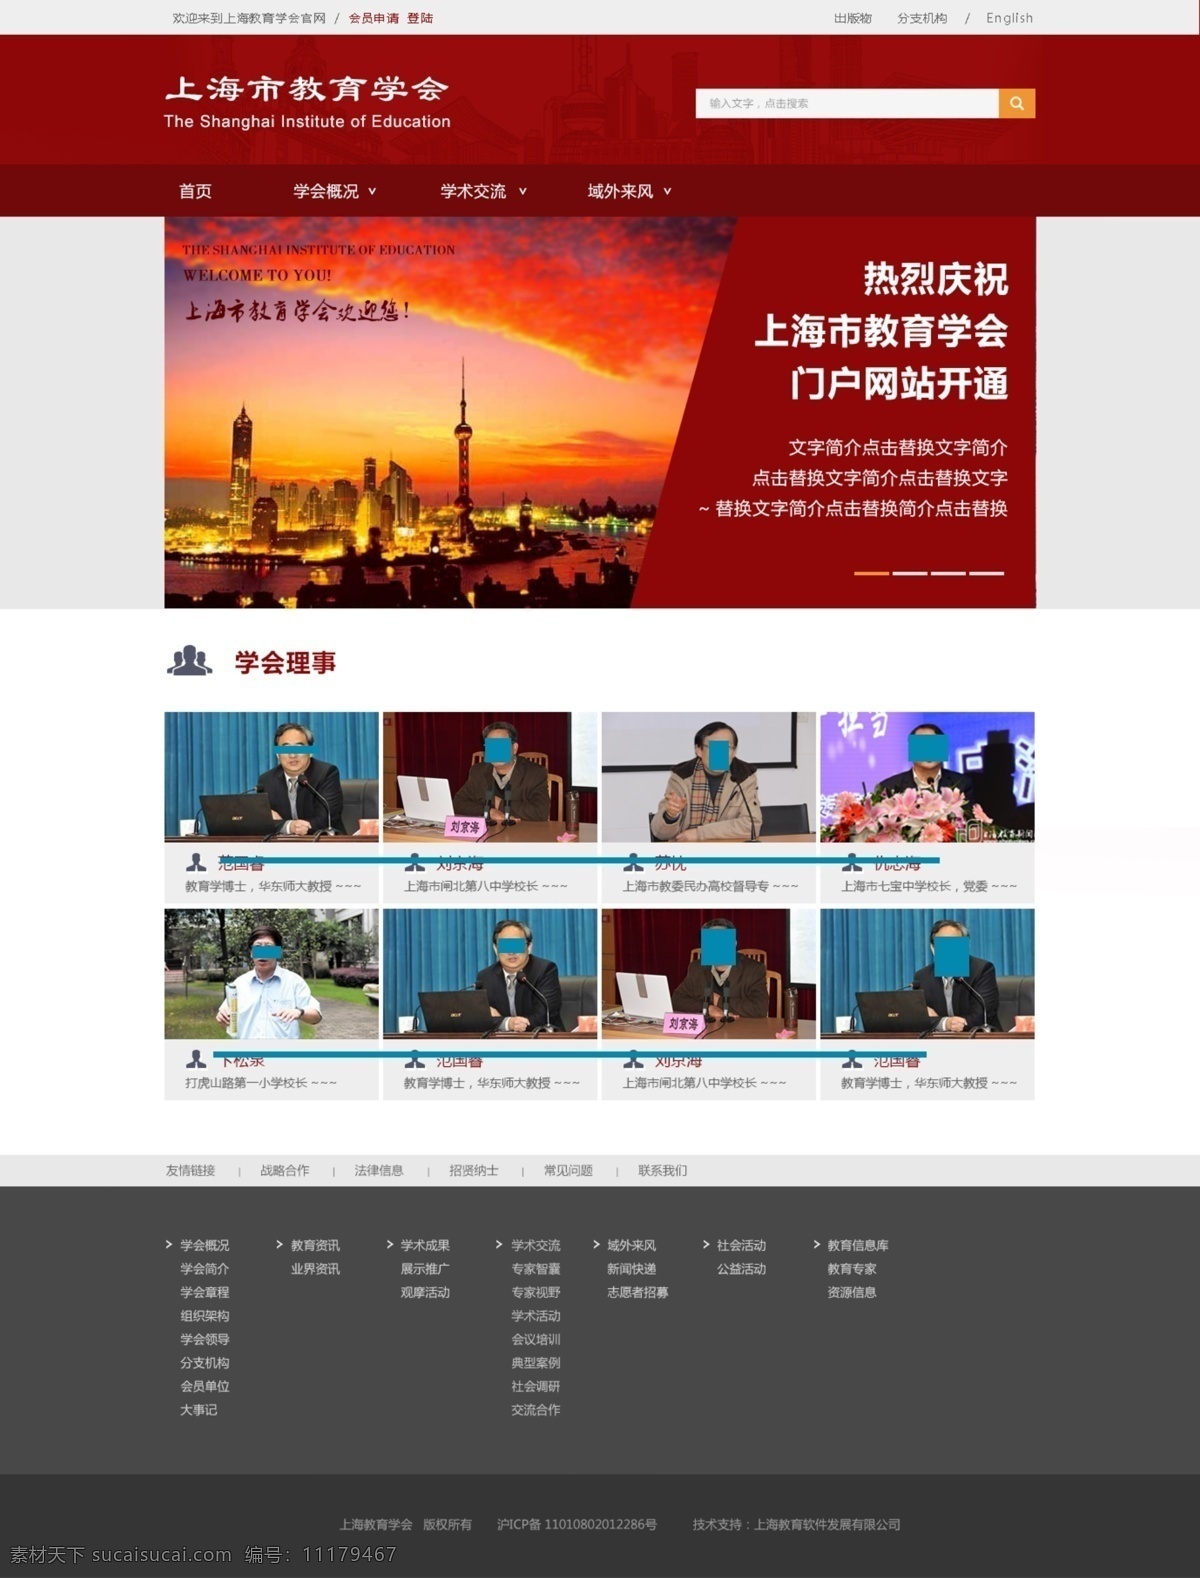 上海 教育 网站设计 学会 红色 庄重 大气 沉稳 网站 门户 人物 教授